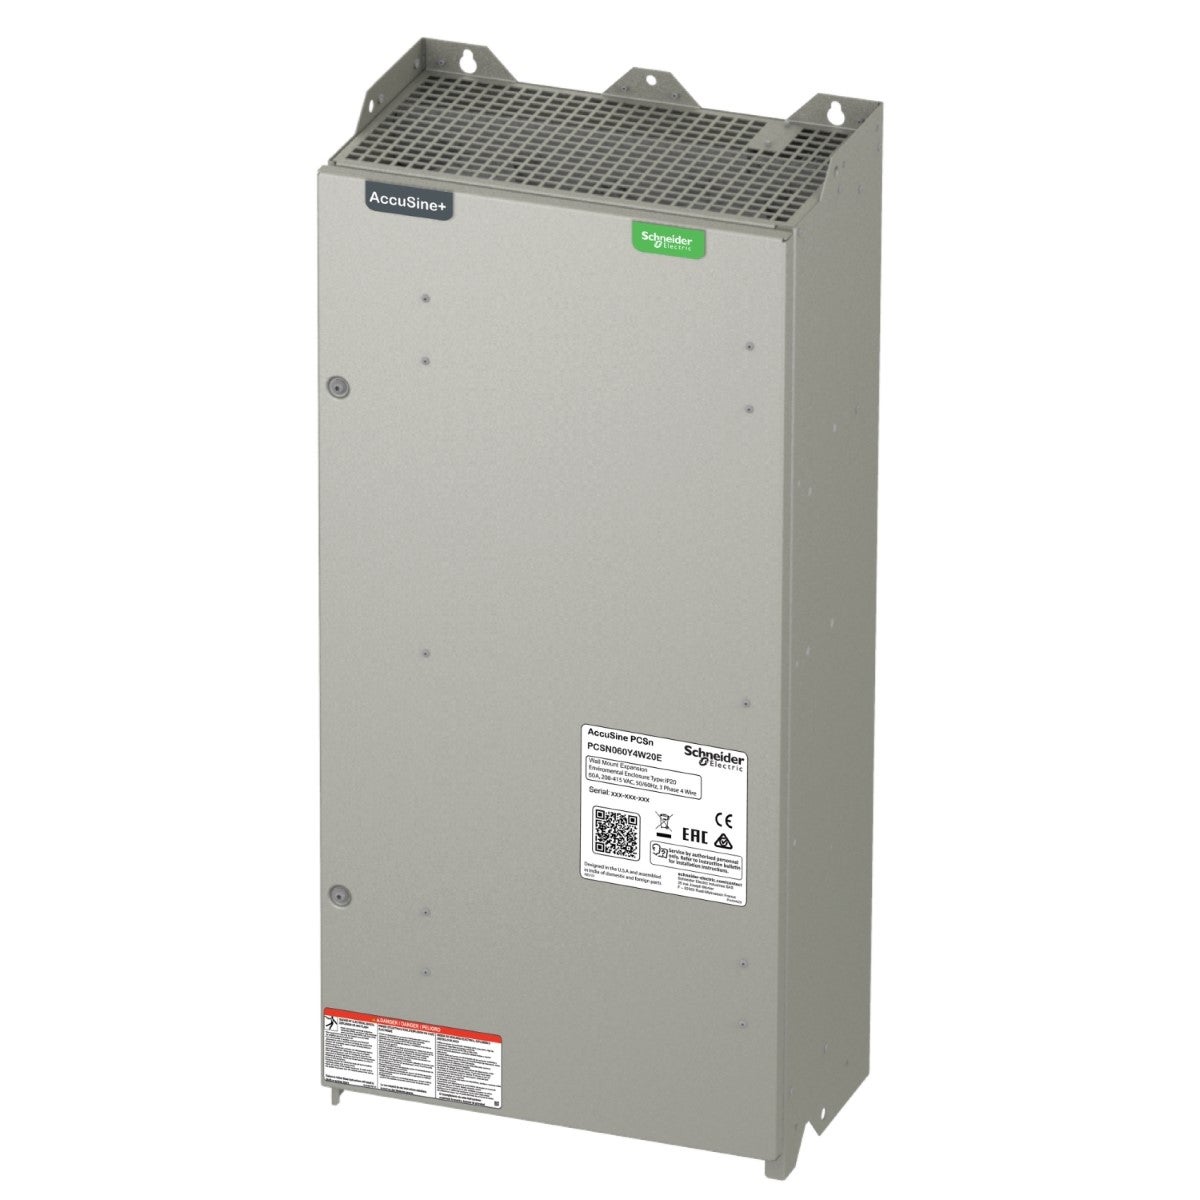 PCSN active harmonic filter 60 amp 208-415 VAC - wall-mounted, IP20 enclosure